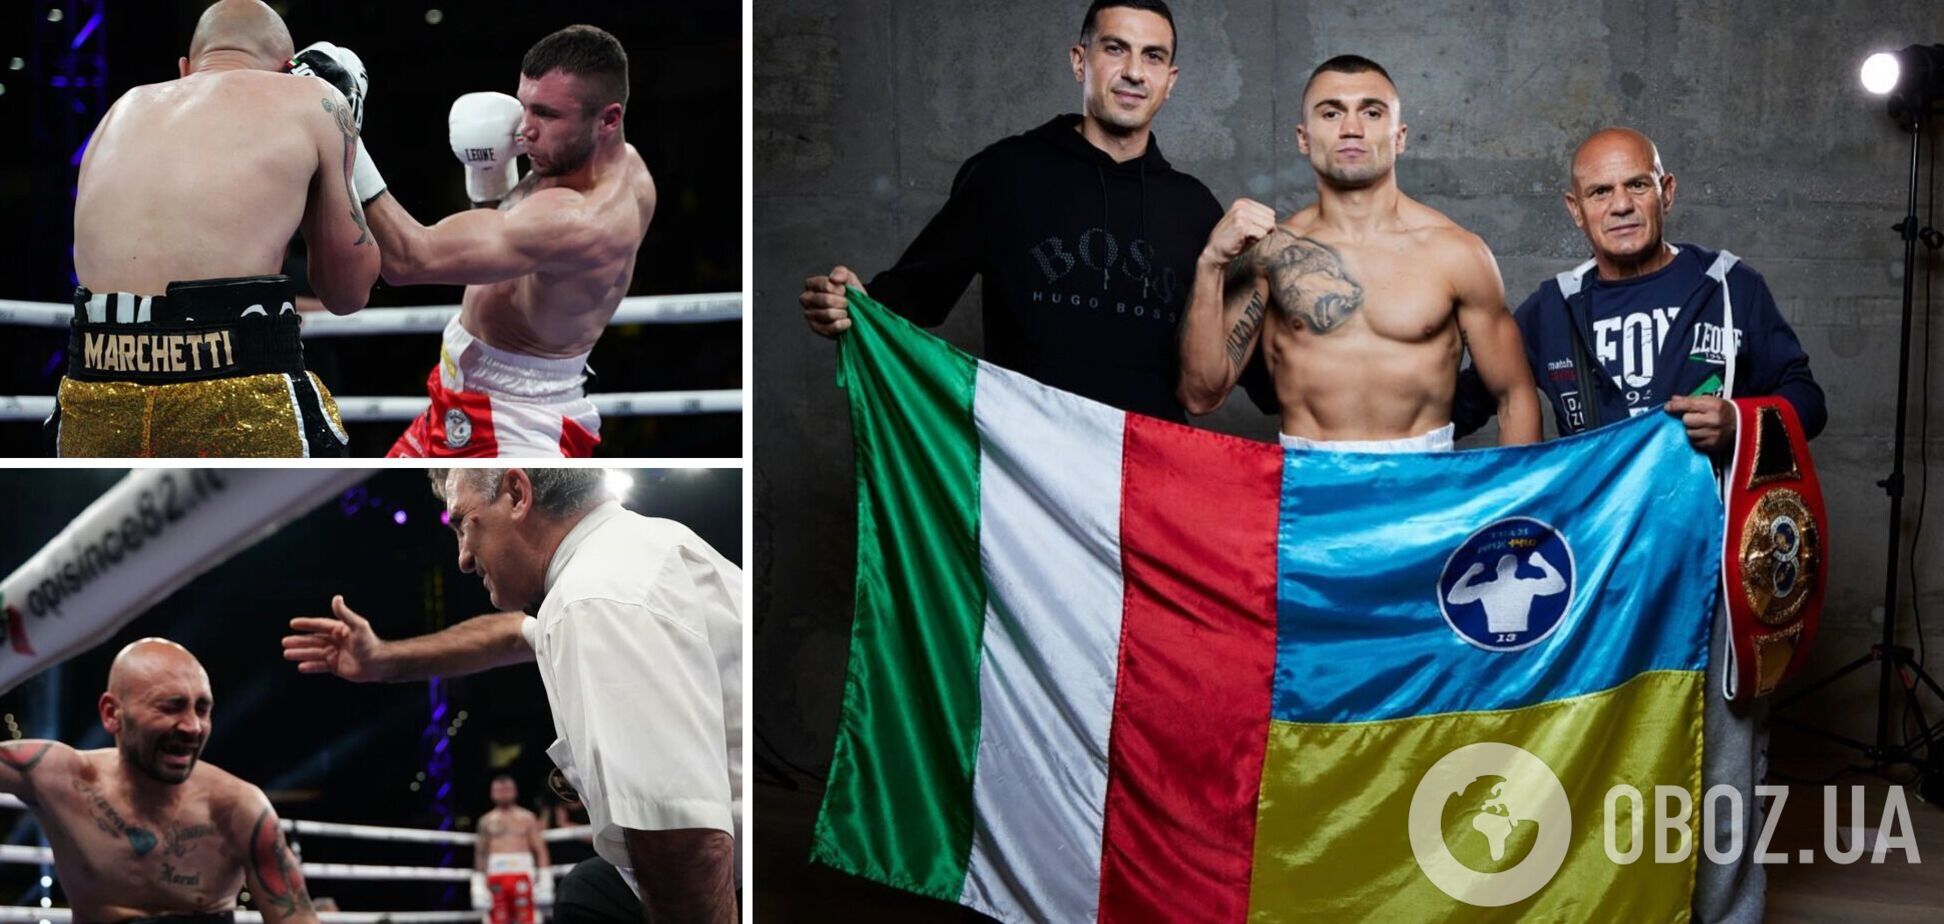 В Италии боксер победил 'отложенным' нокаутом и крикнул 'Слава Украине!', станцевав гопак. Видео